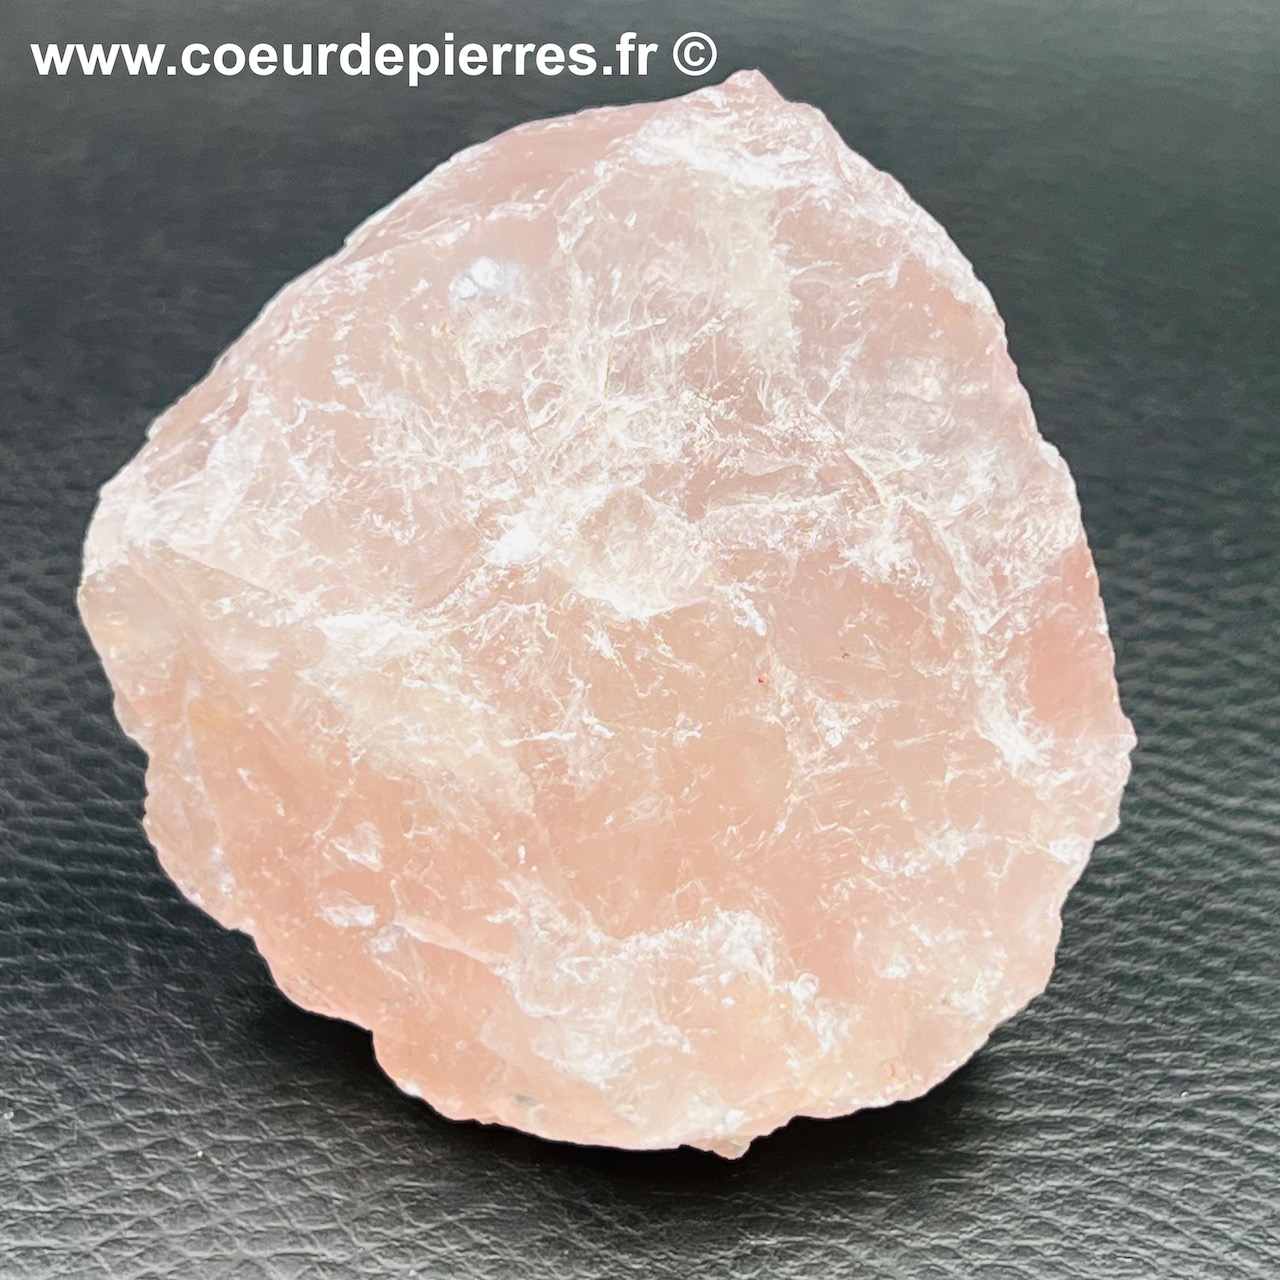 Bloc brut de quartz rose de Madagascar 0,170Kg (réf prb3)